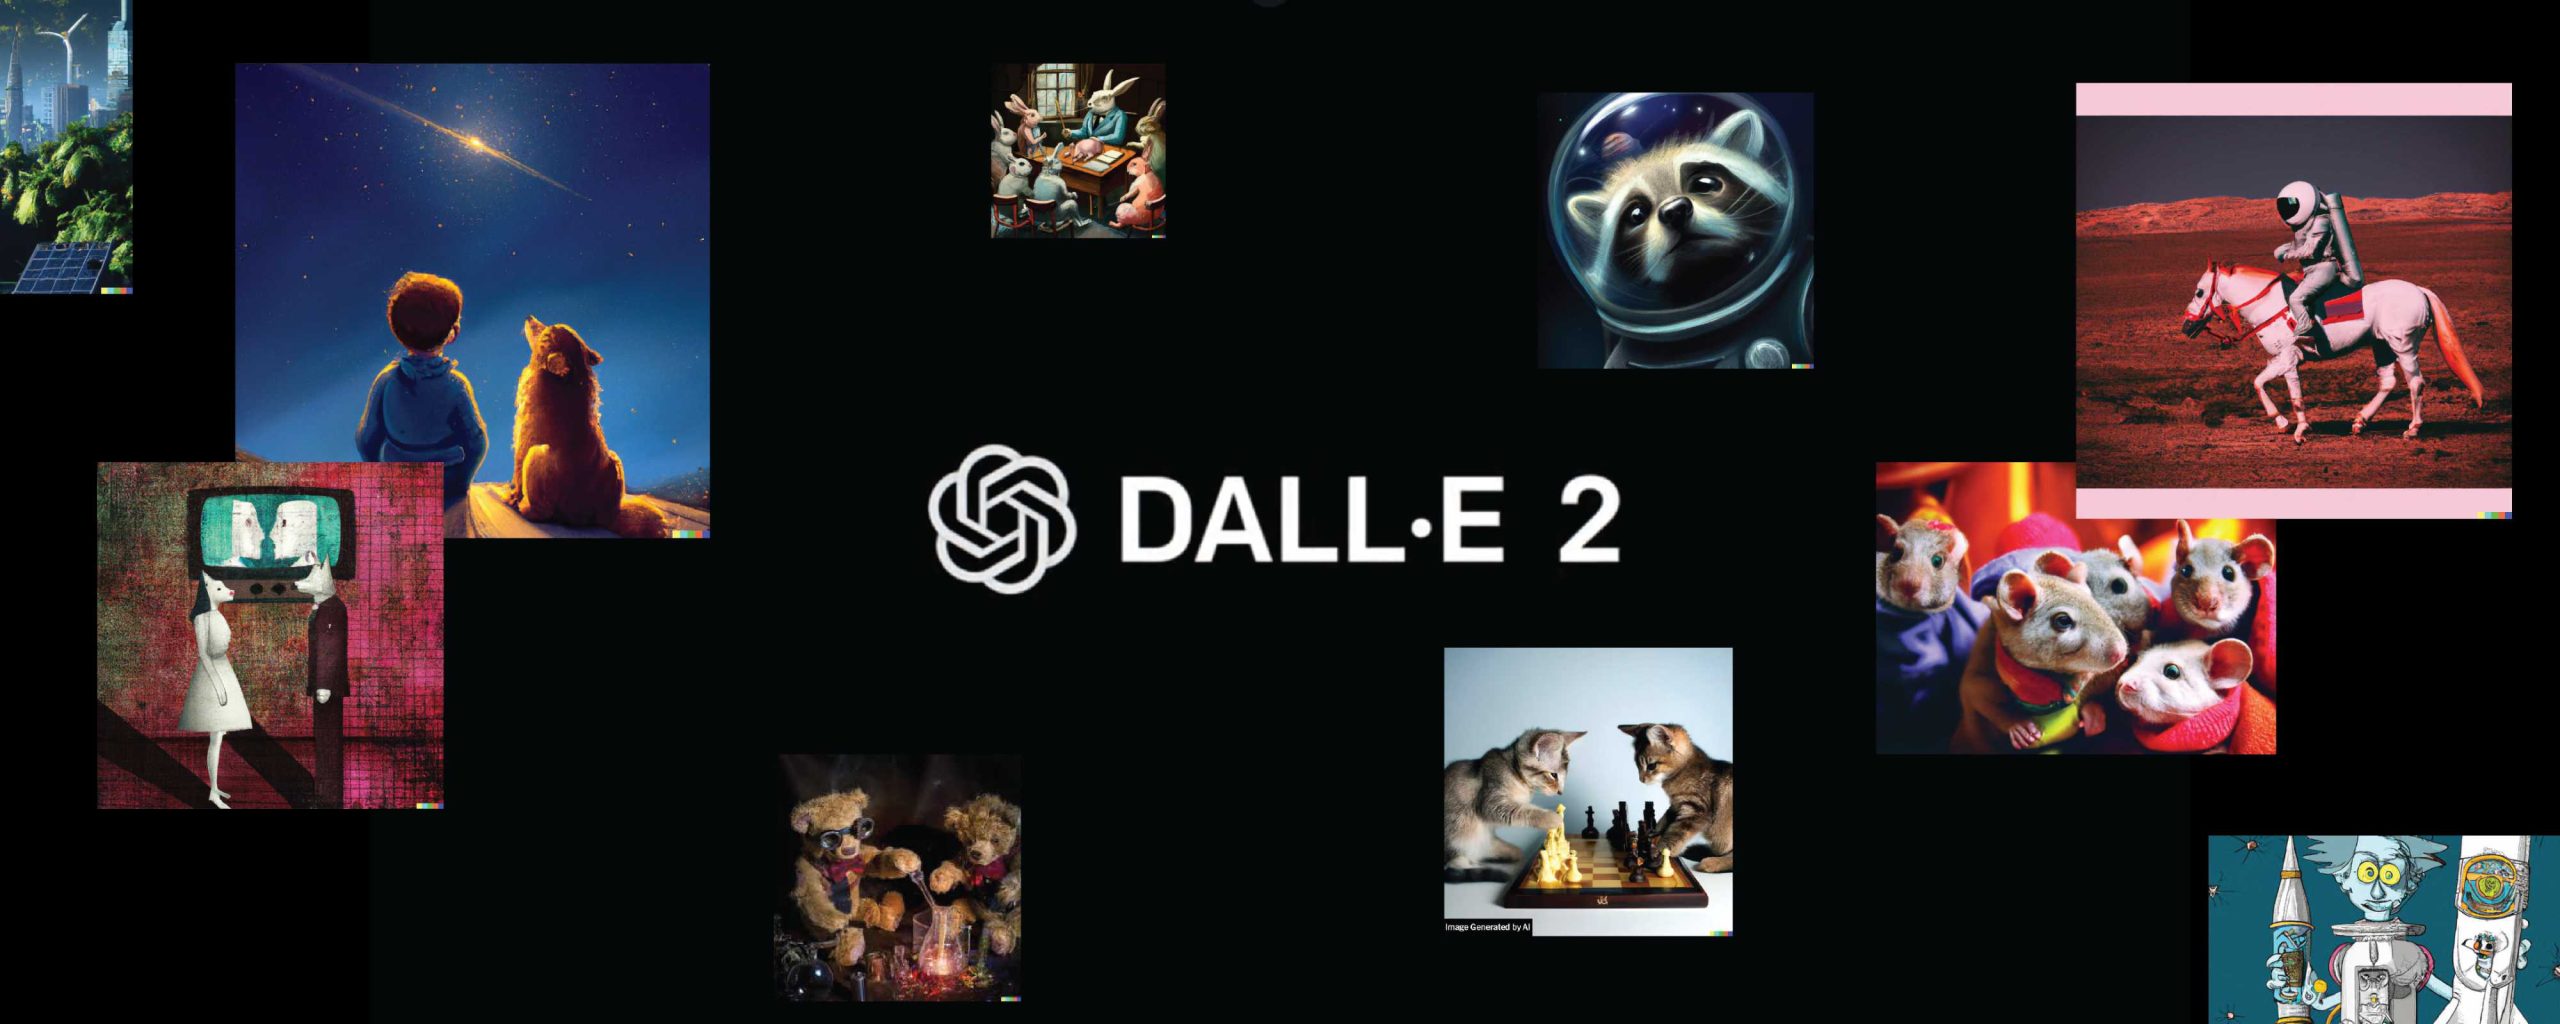 DALL-E 2 Nedir?